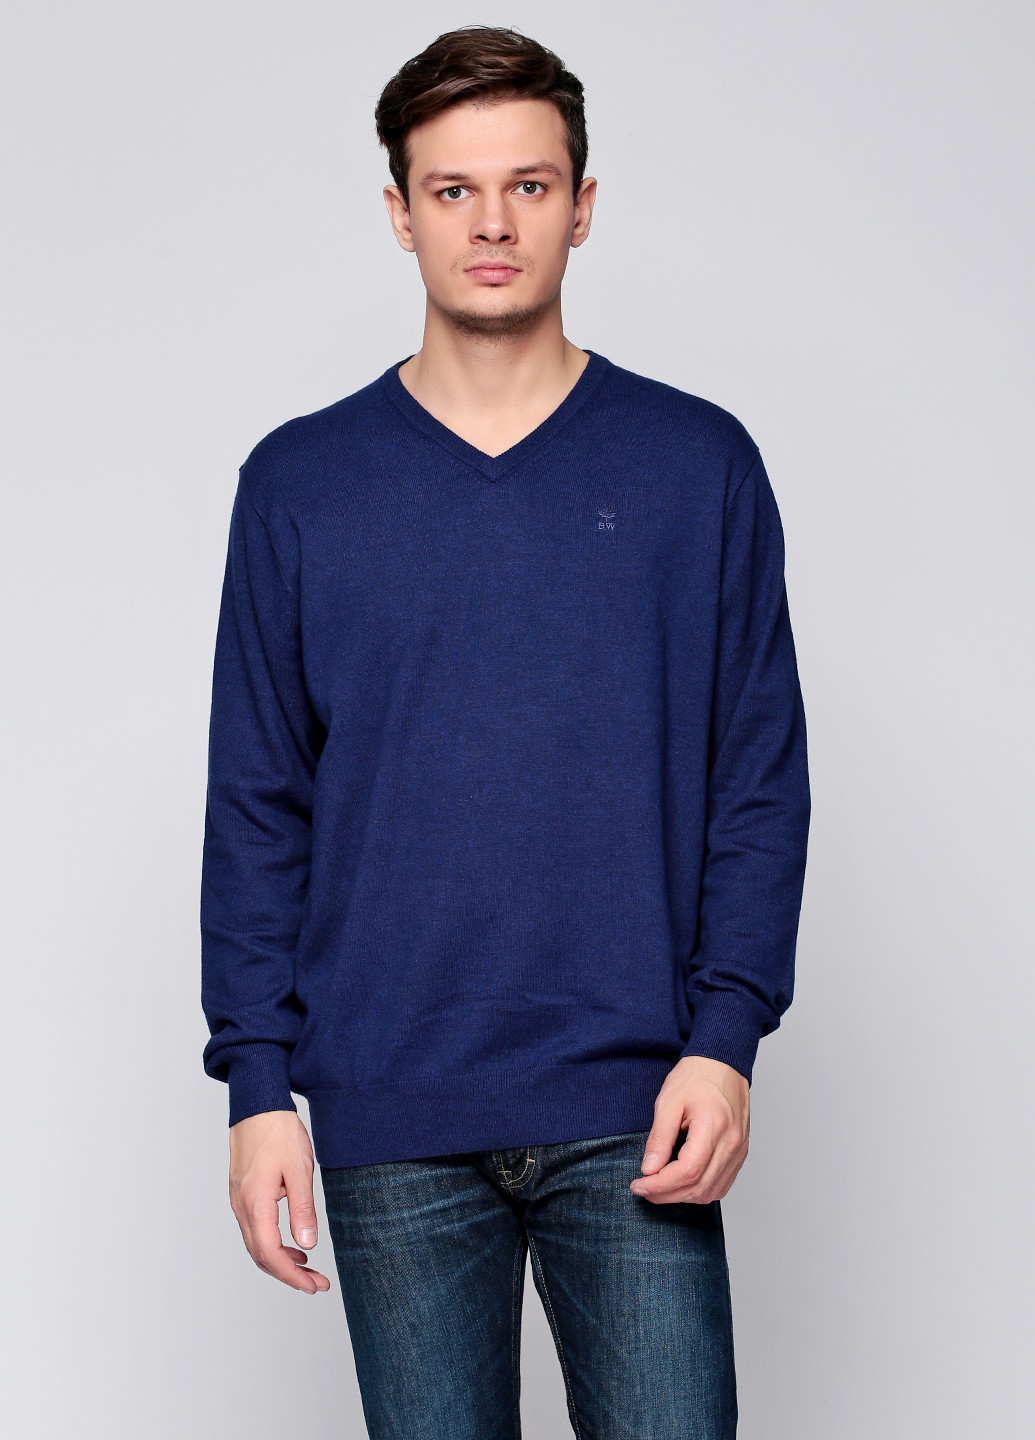 Темно-синий демисезонный пуловер пуловер River Woods